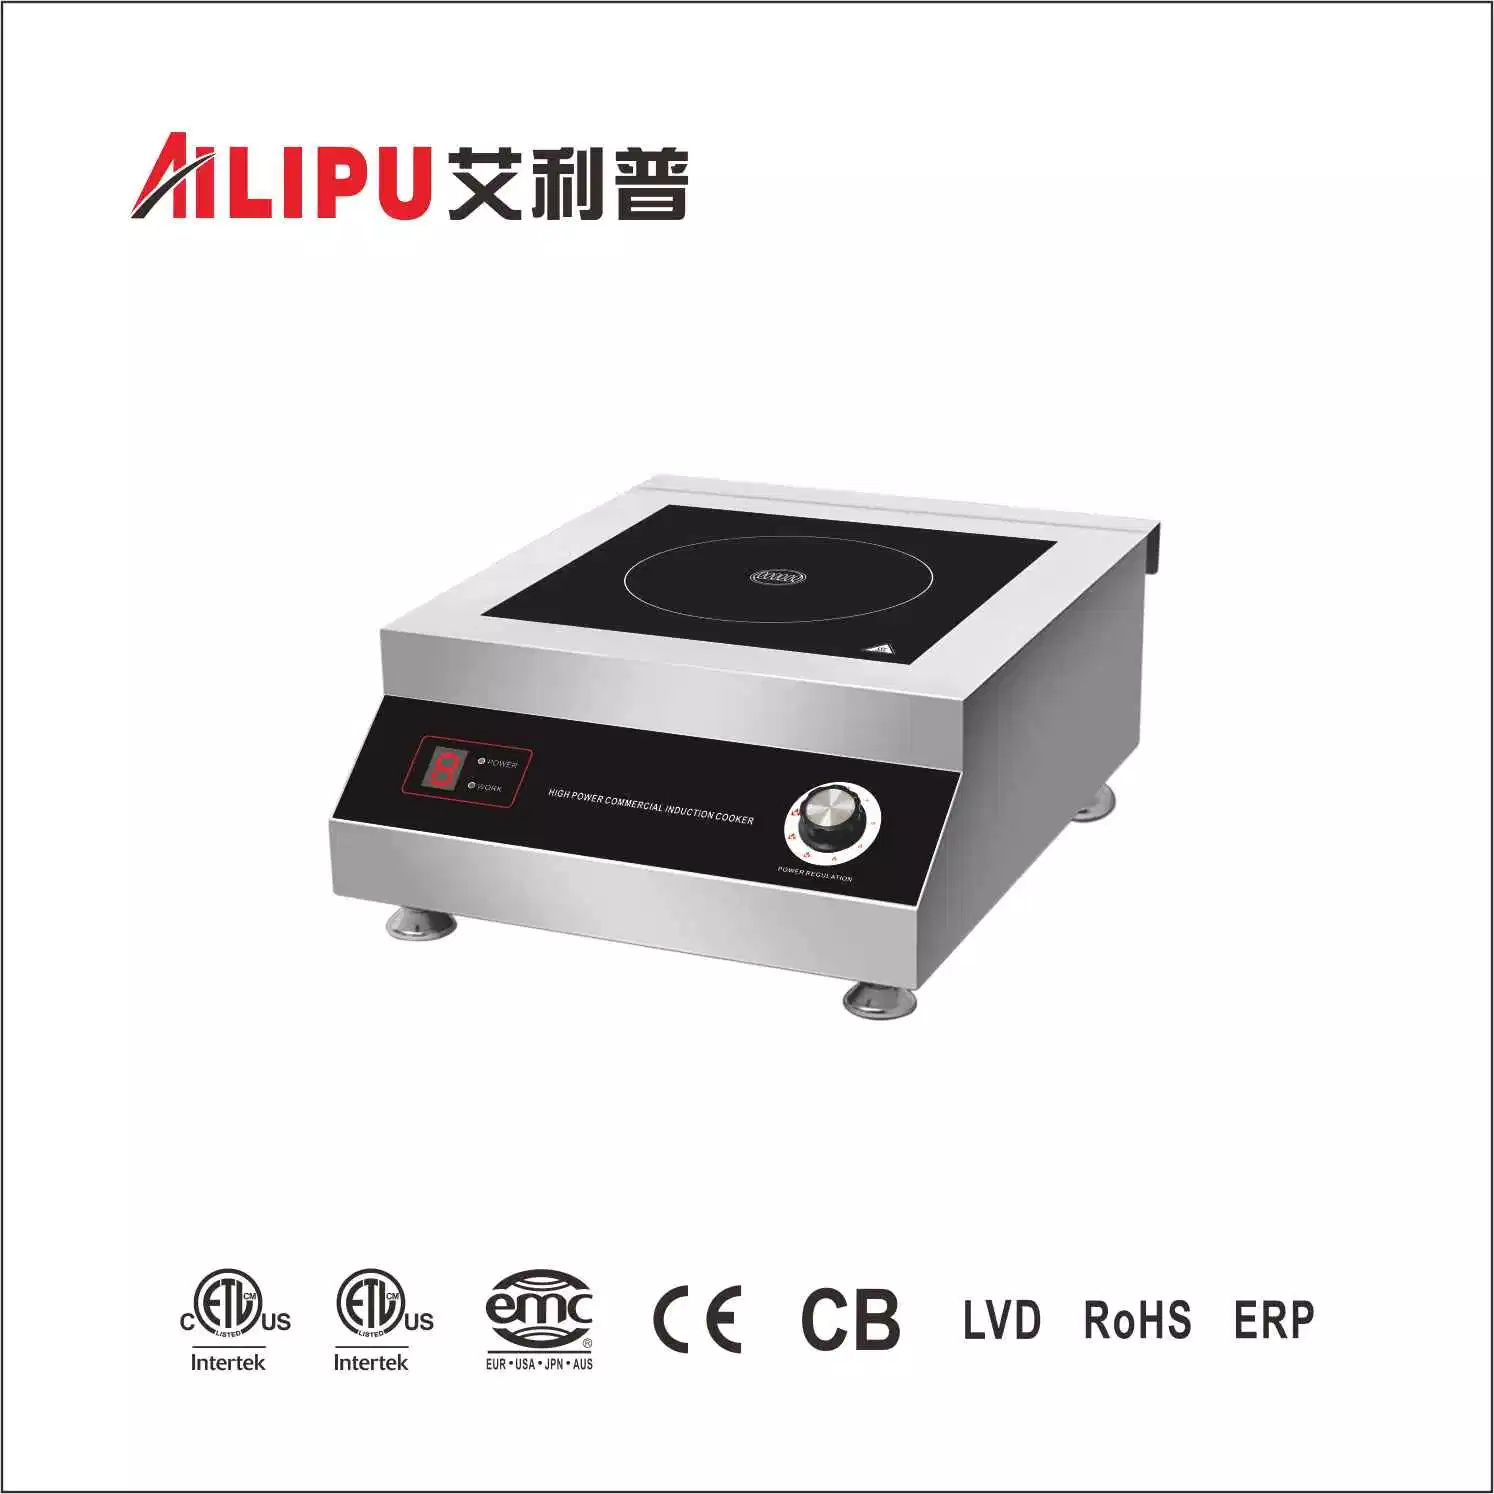 Alta potencia de 5000W/7000W placa de inducción comercial// aparato de cocina cocina ALP-C08D